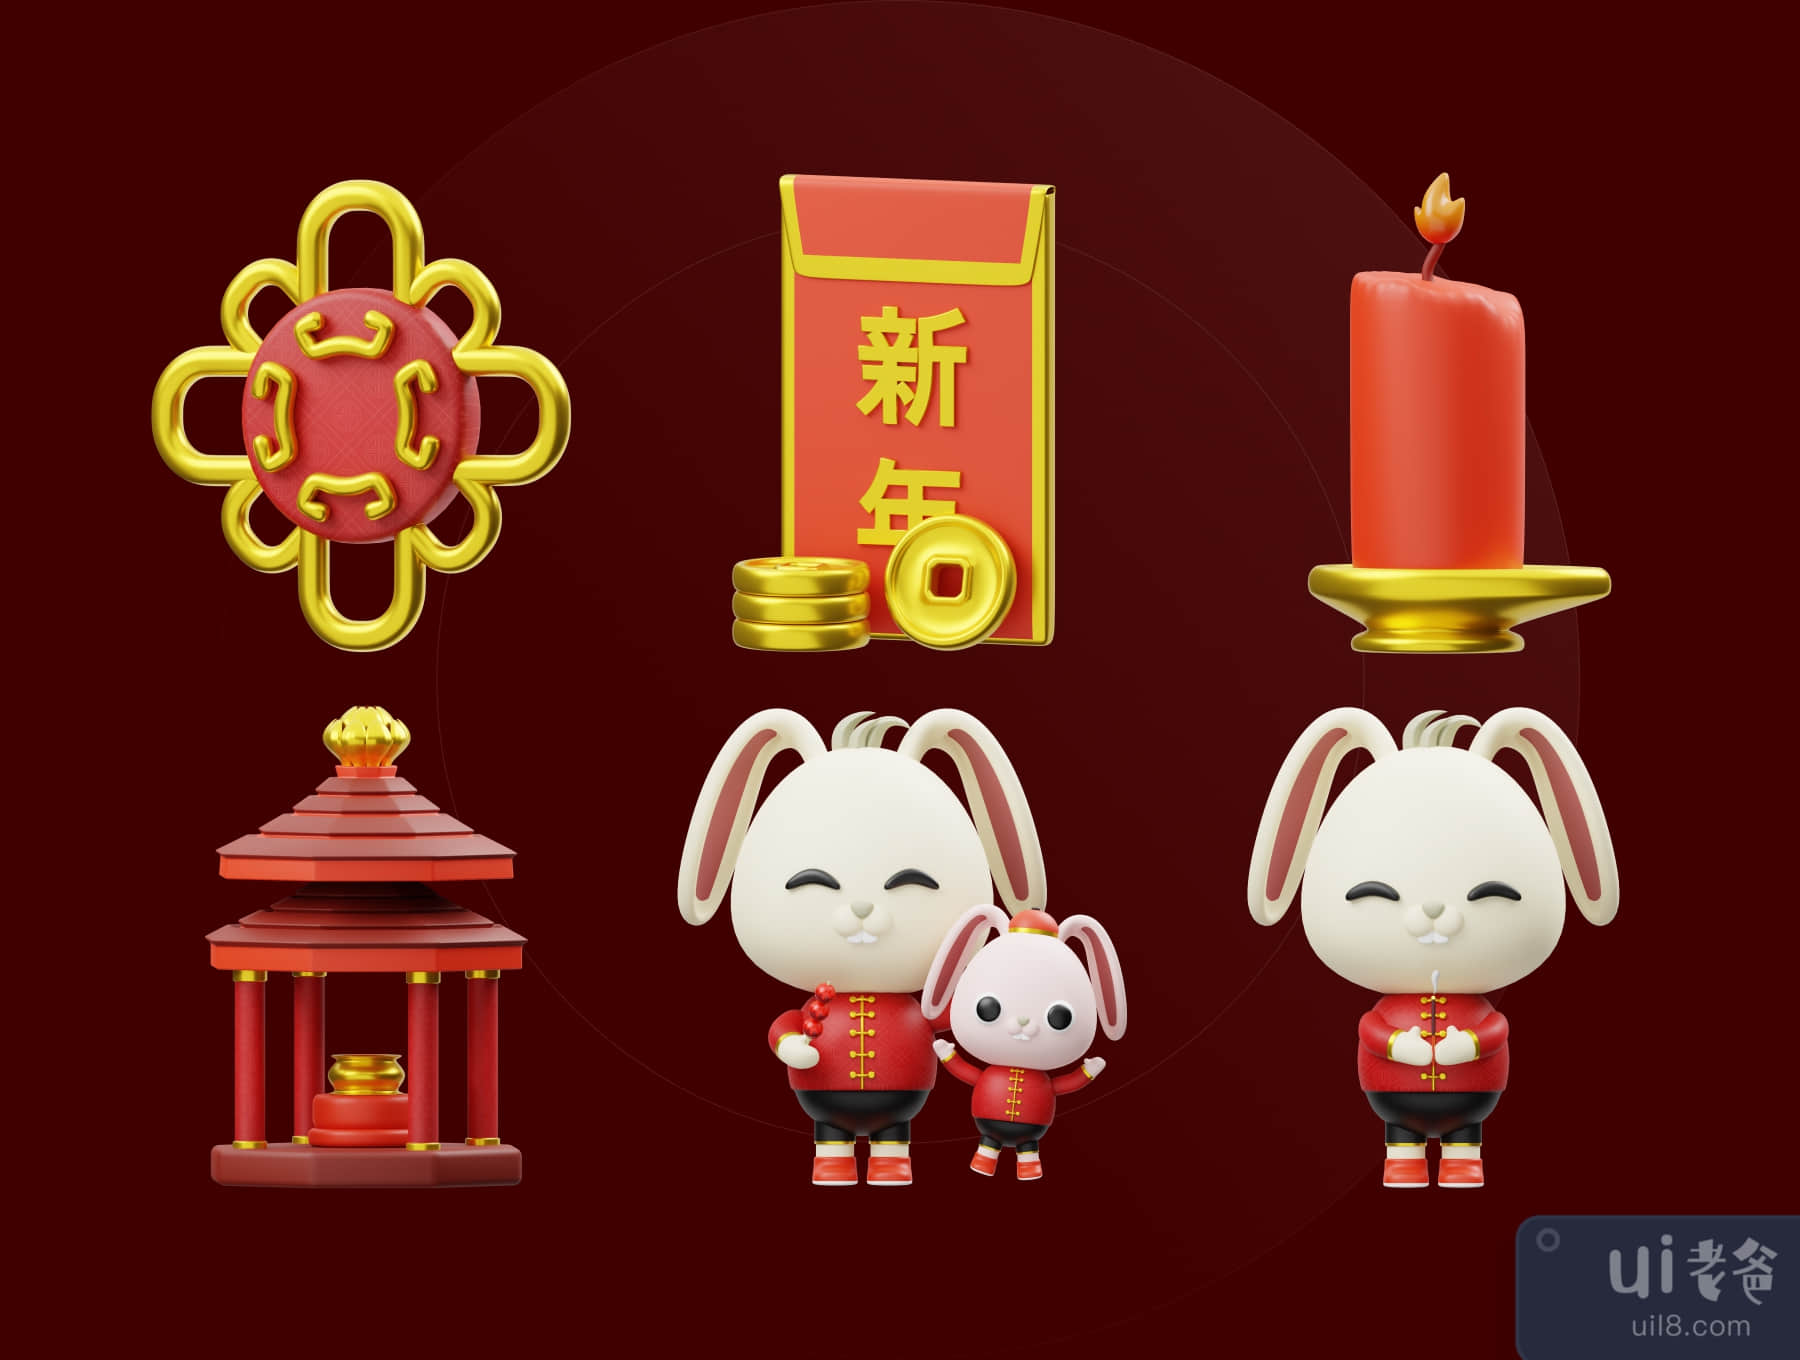 中国新年的3D插图 (Chinese New Year 3D Illustration)插图5